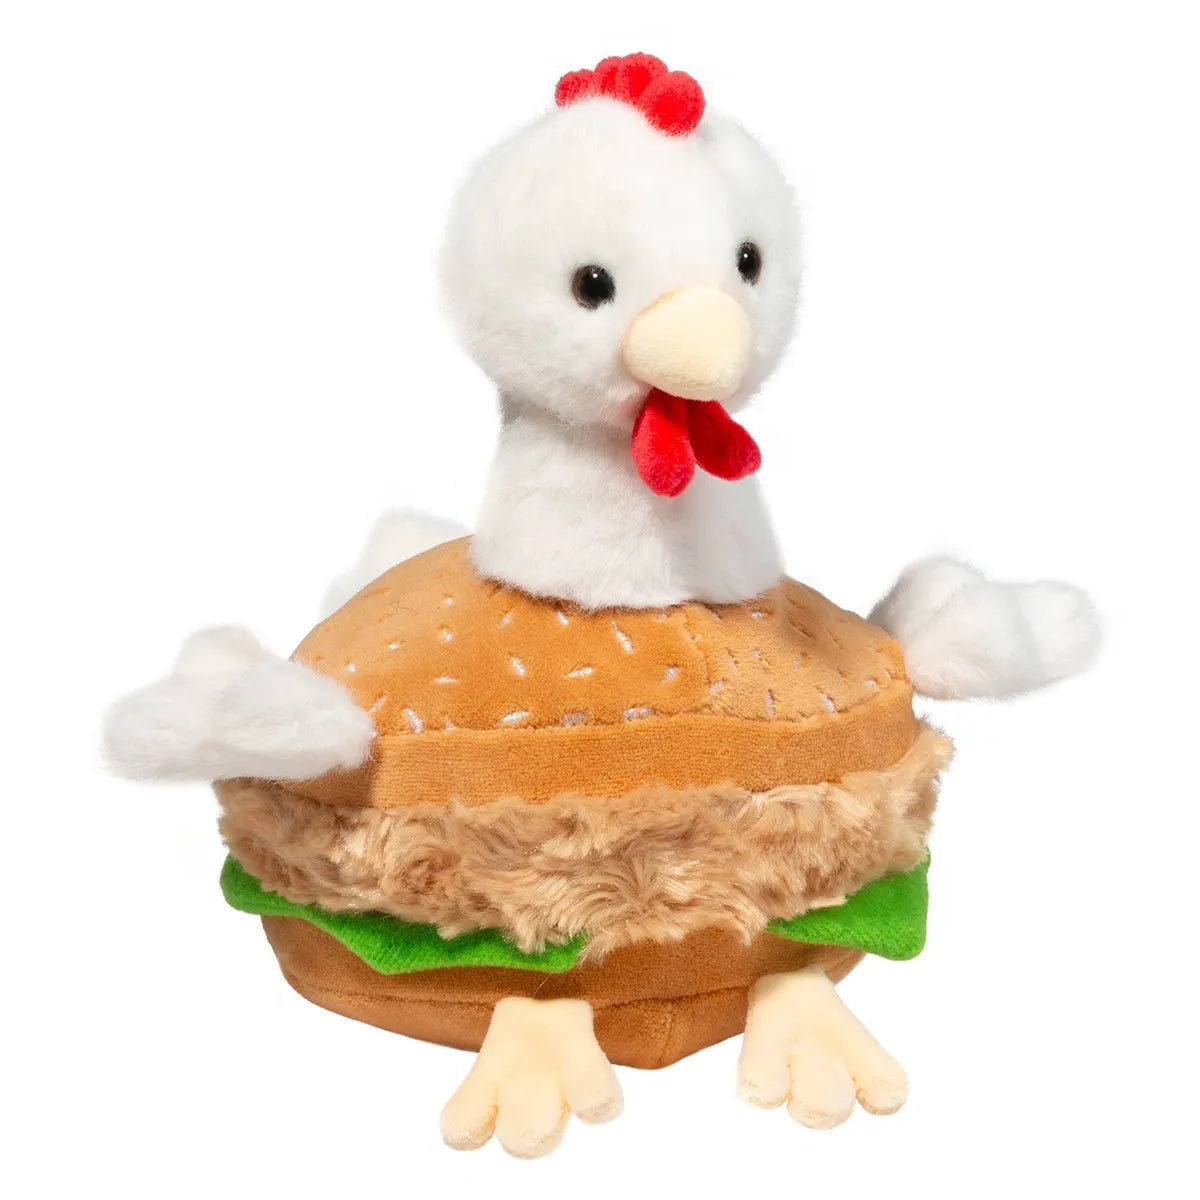 Chicken Sandwich Macaroon Cover